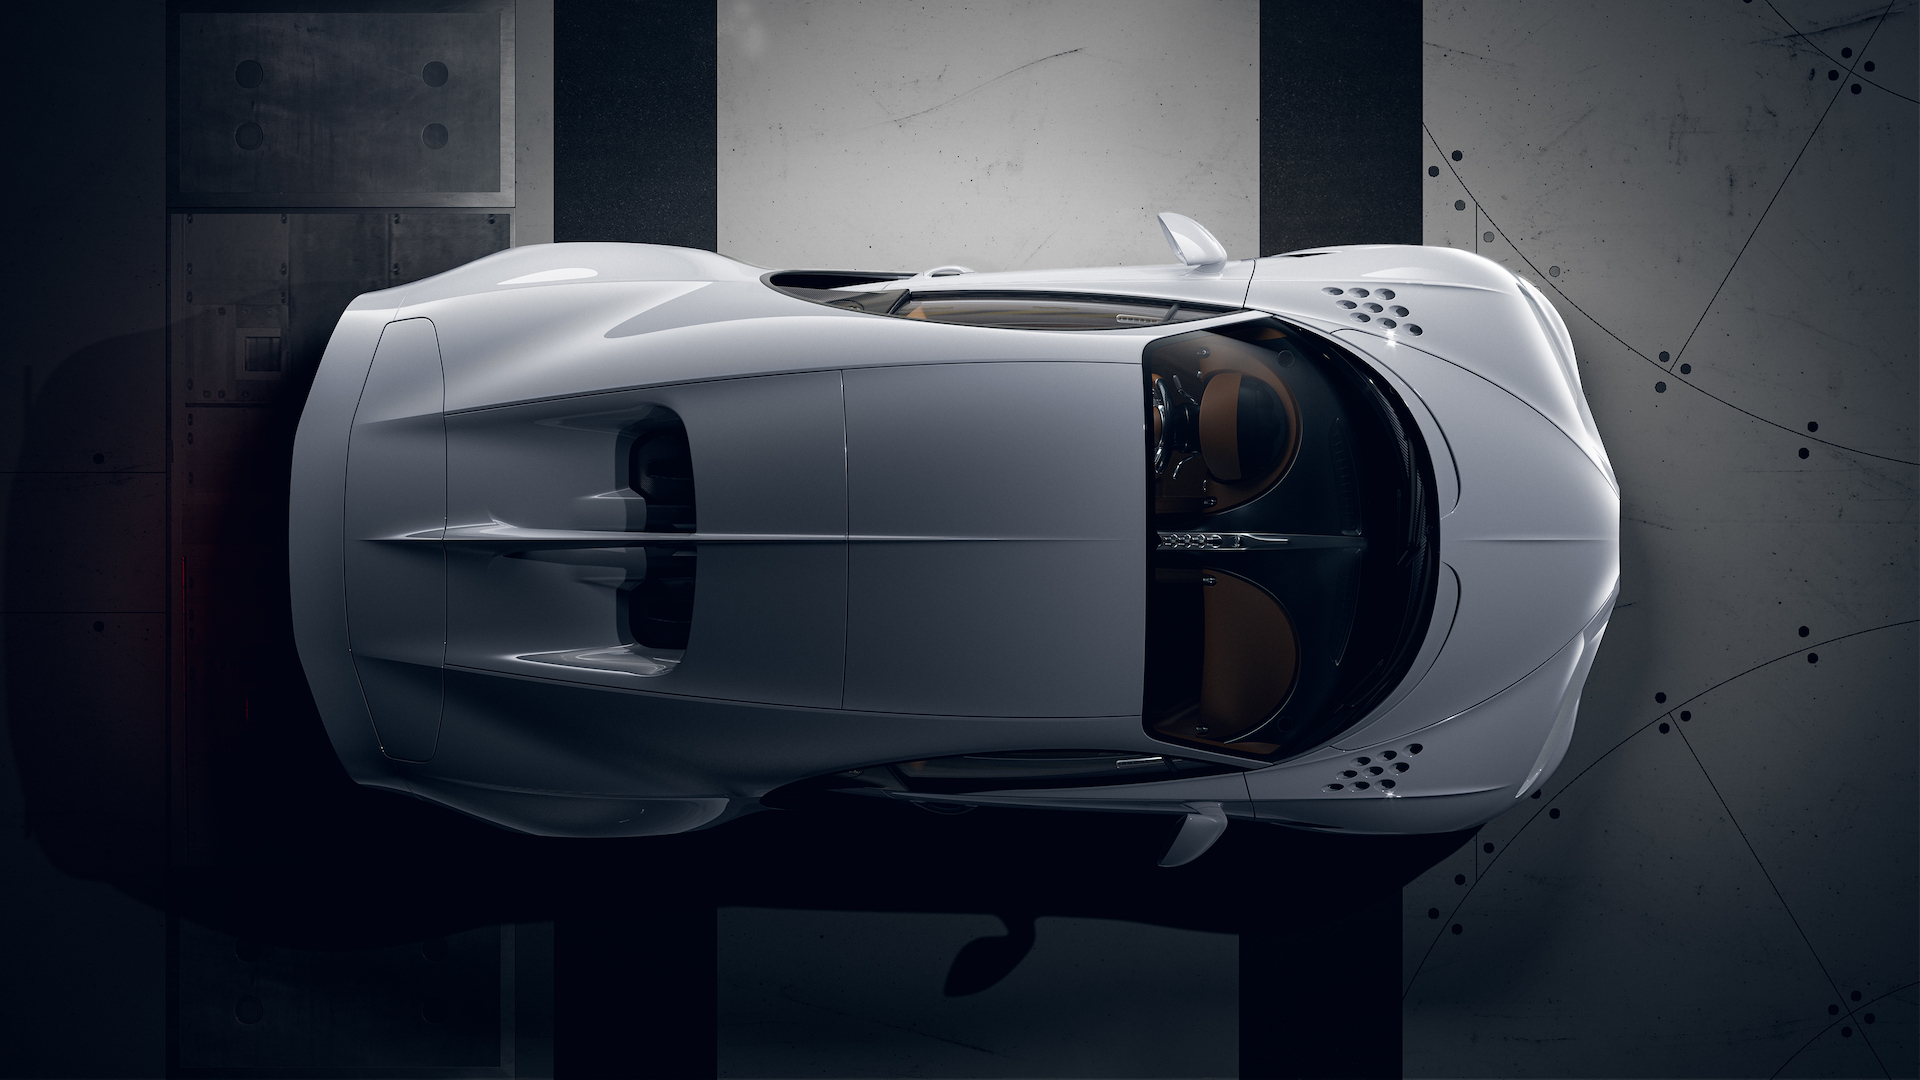 Siêu phẩm Bugatti Chiron Super Sport ra mắt: Giới hạn 60 xe, giá 3,9 triệu USD - Ảnh 3.